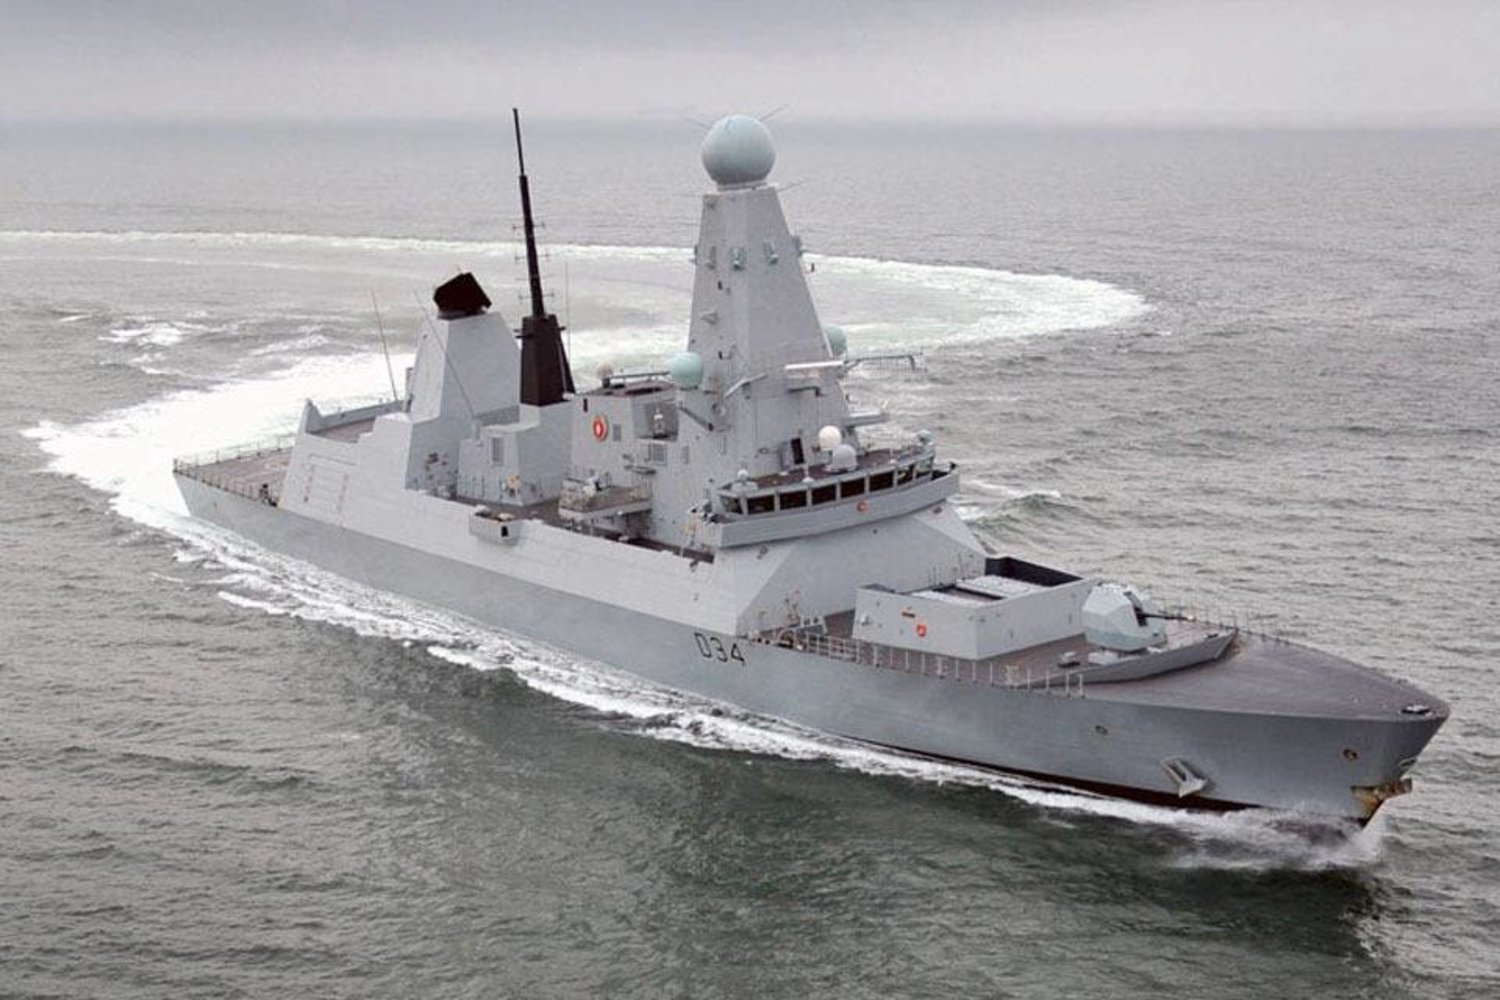 للمساهمة بتعزيز الأمن... بريطانيا ترسل سفينة حربية إلى الخليج